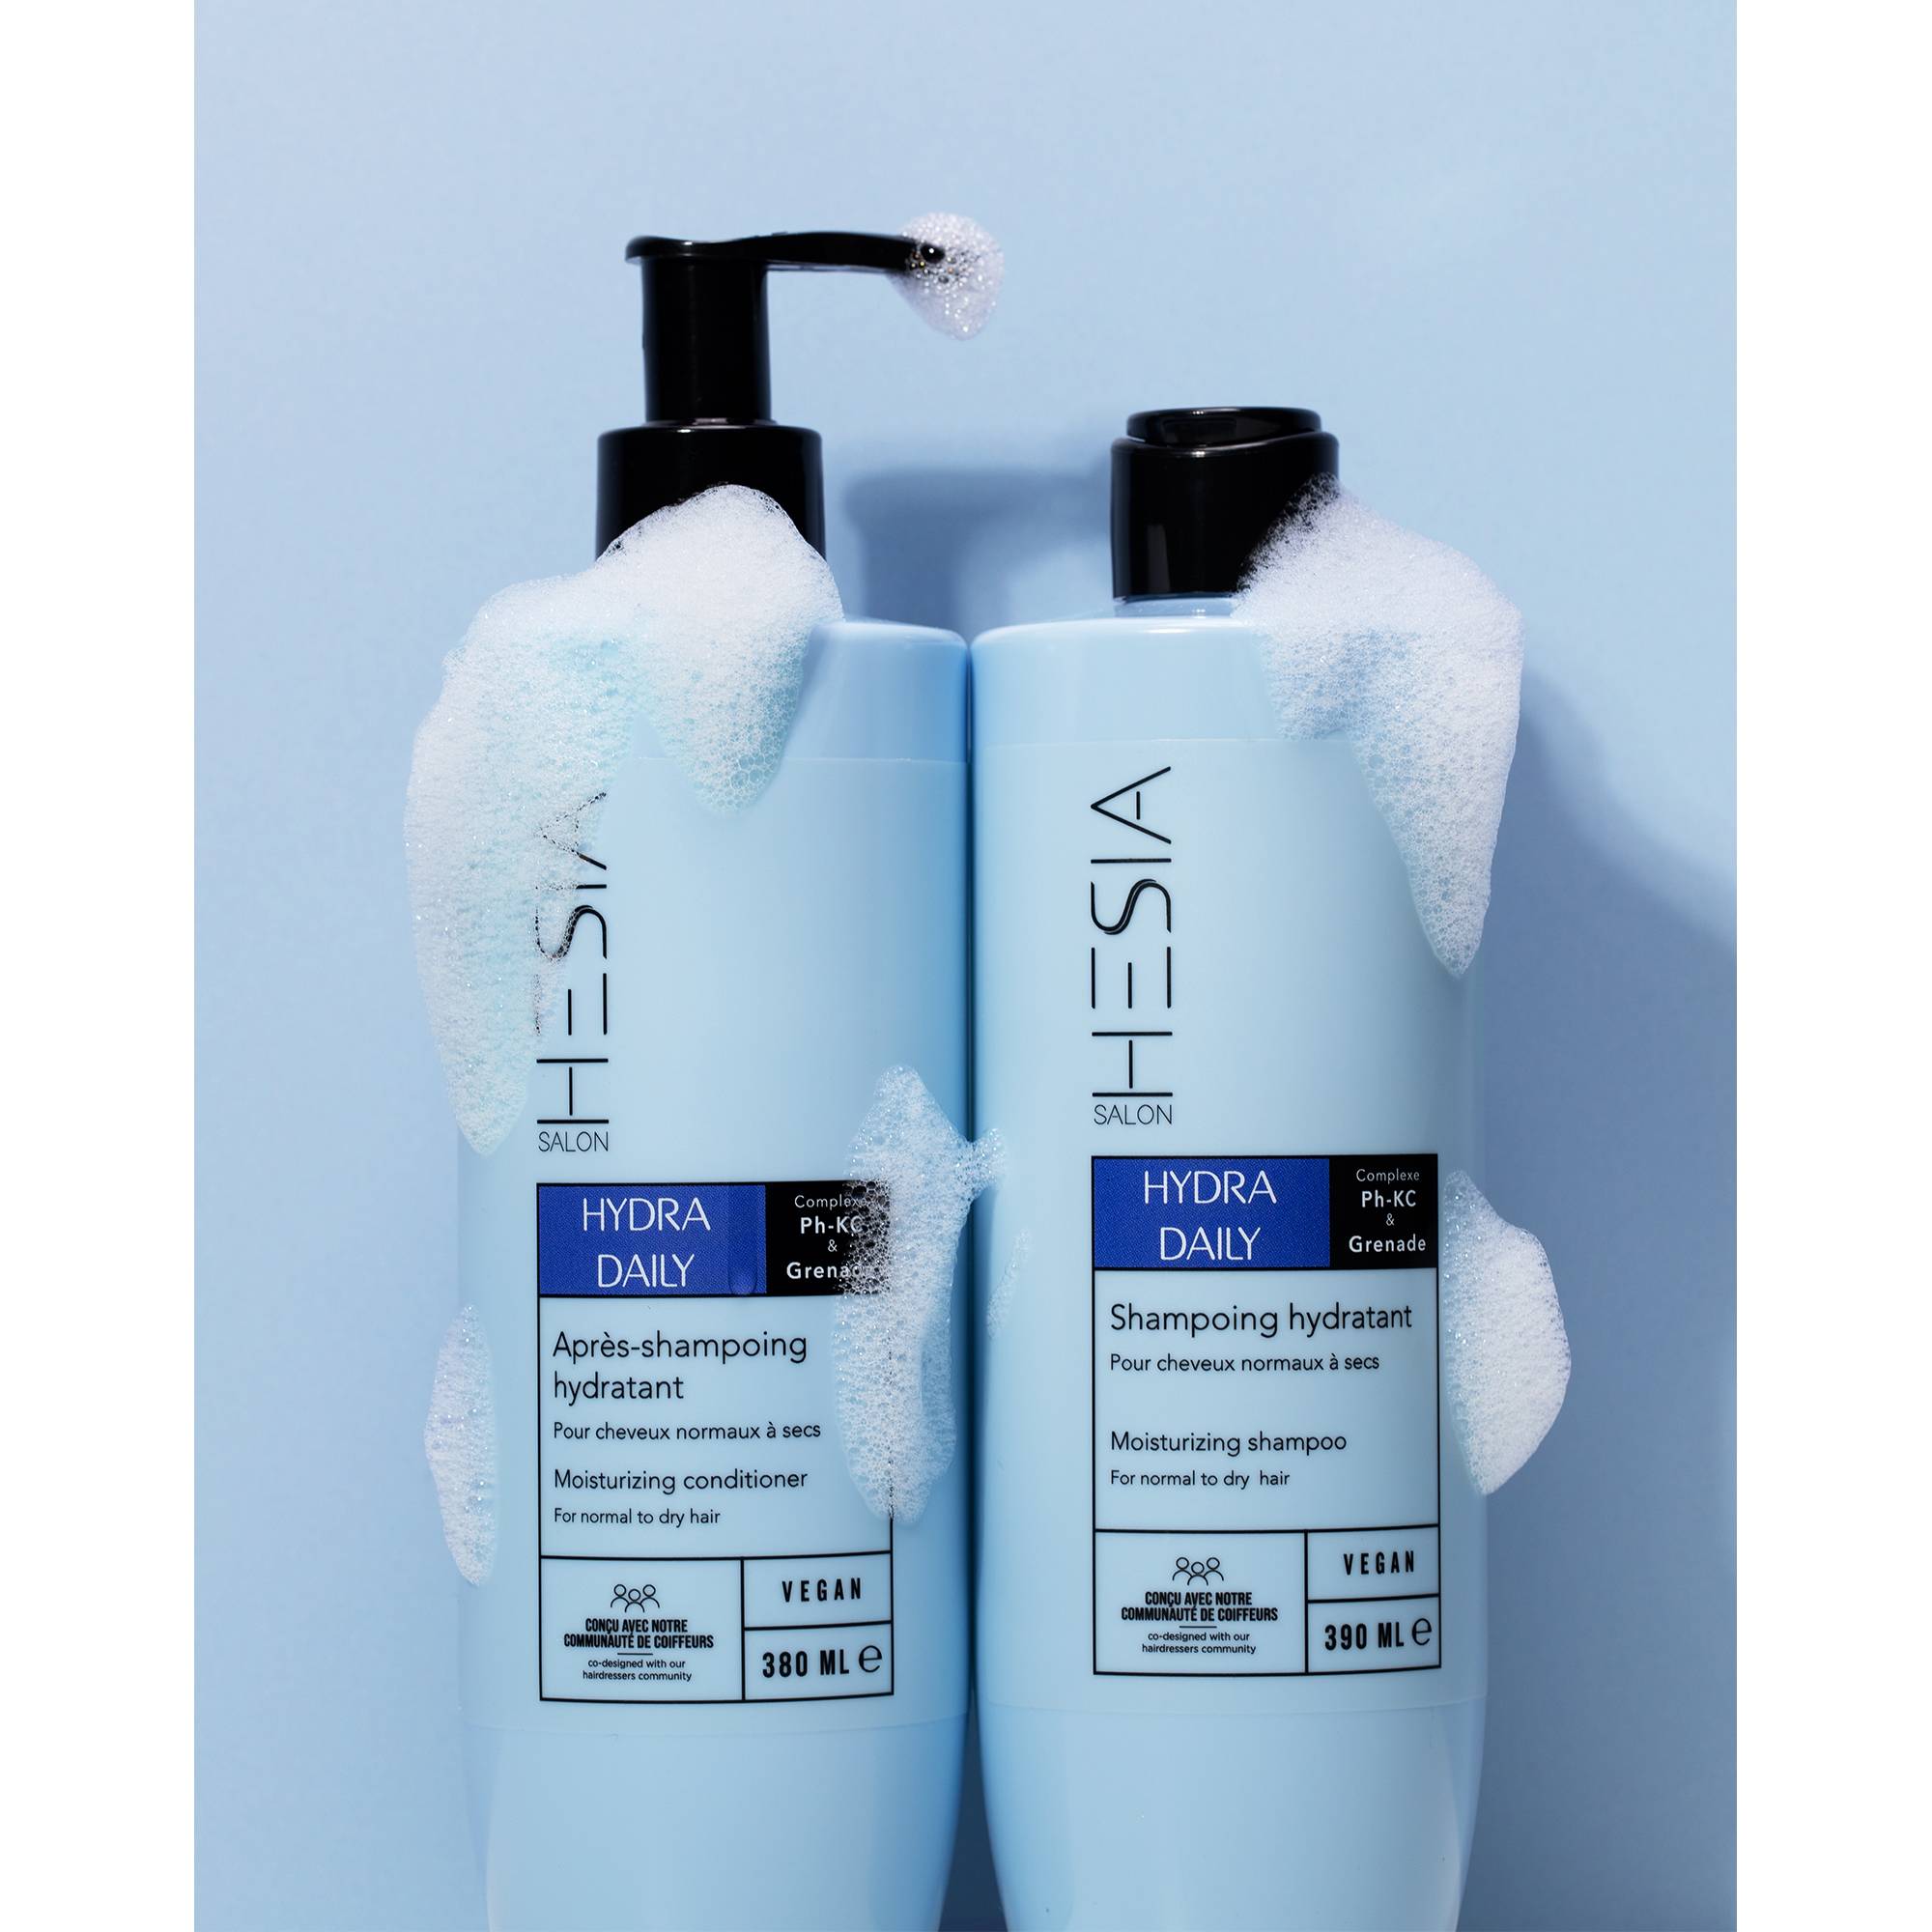 Shampoing hydratant Hydra Daily de la marque HESIA Salon Contenance 390ml - 4